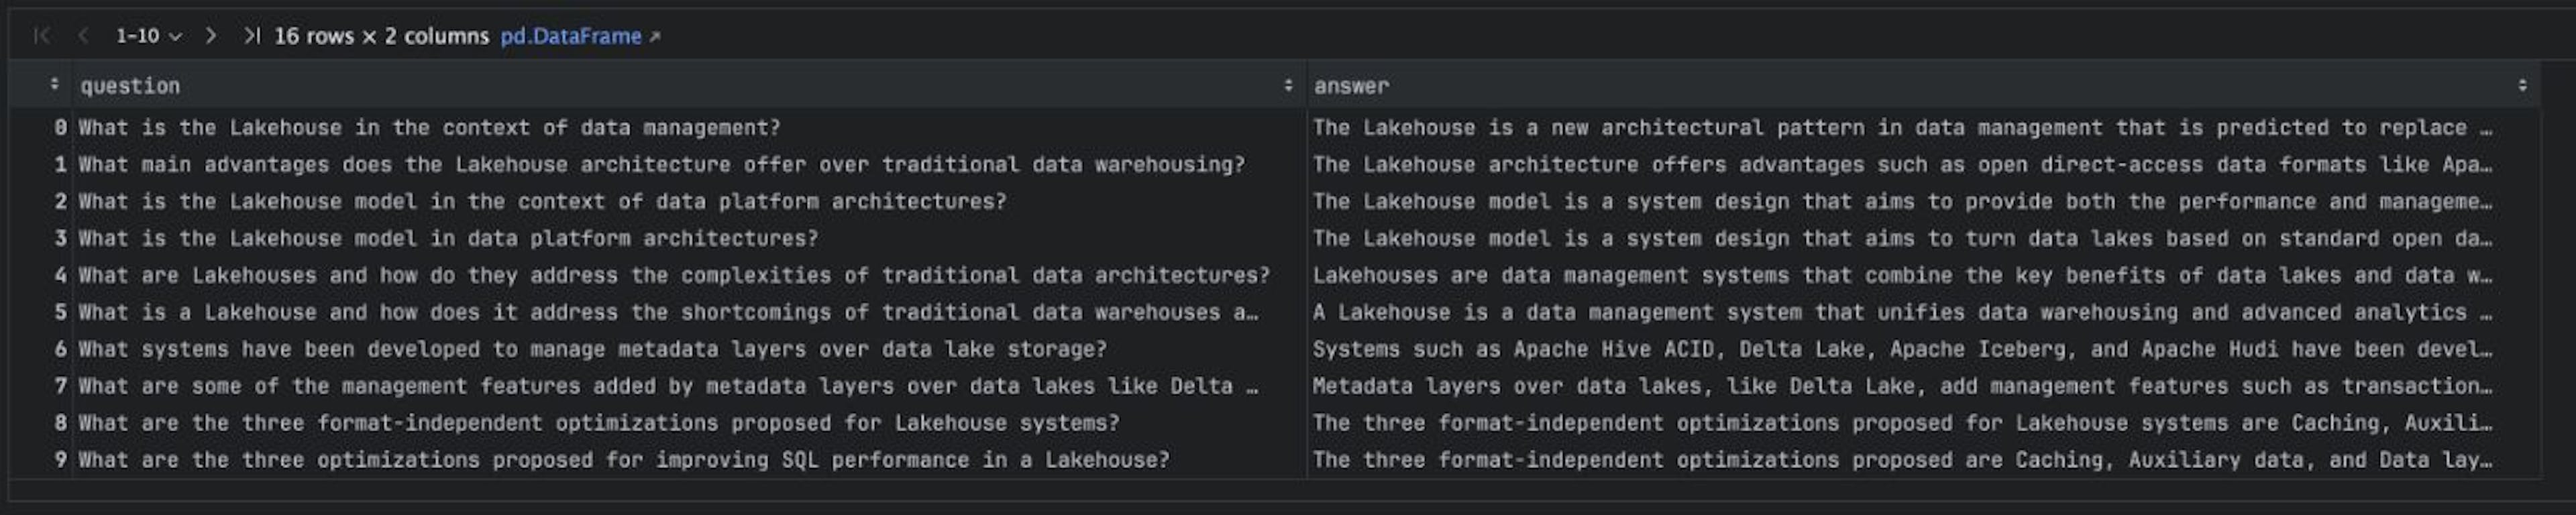 Kho dữ liệu QA tổng hợp cho bài viết "Lakehouse: Một thế hệ nền tảng mở mới hợp nhất kho dữ liệu và phân tích nâng cao".